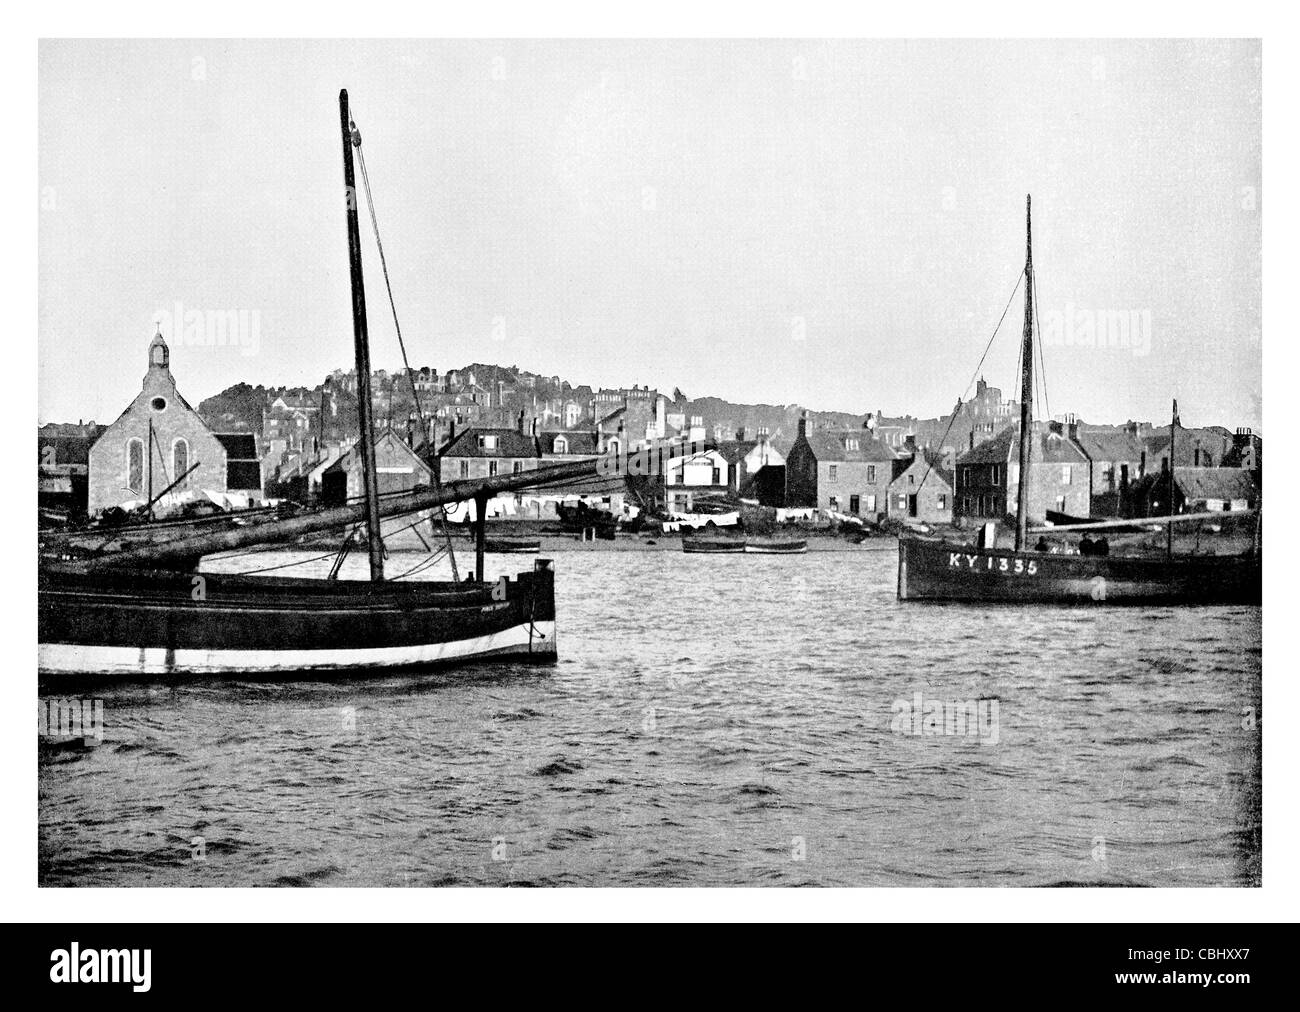 Broughty Ferry Scozia Dundee flotta peschereccia scialuppa di salvataggio Mona nave barca porto di attracco chiesa cappella Harbour Foto Stock